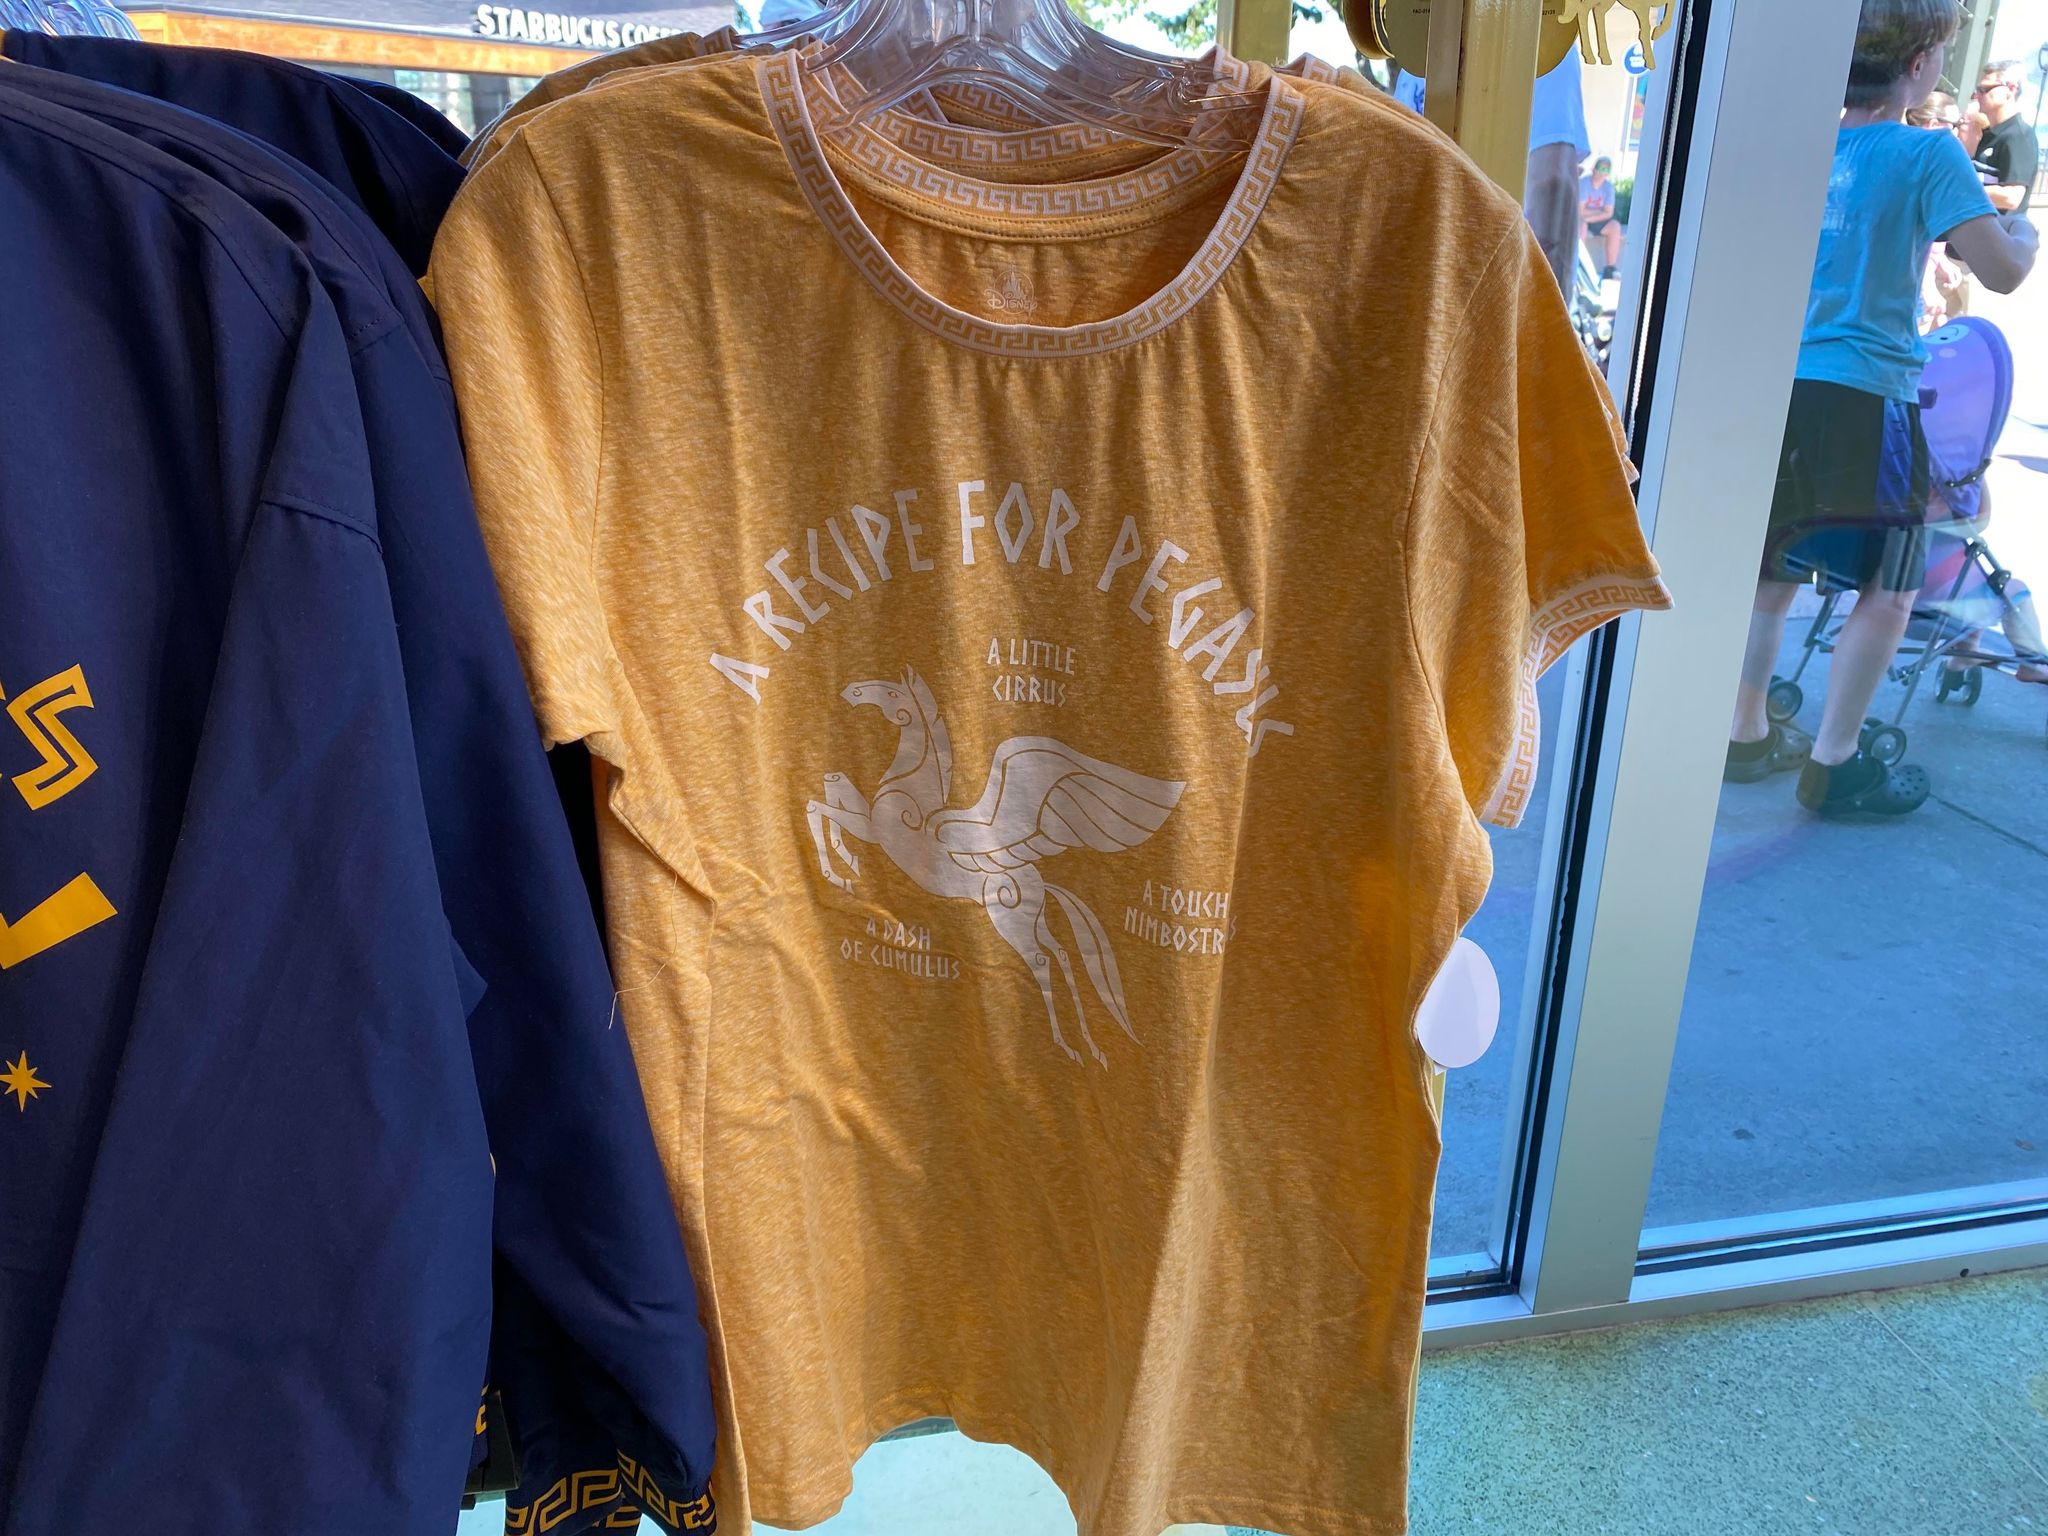 Hercules Clothing at Disney Springs - Pegasus Shirt